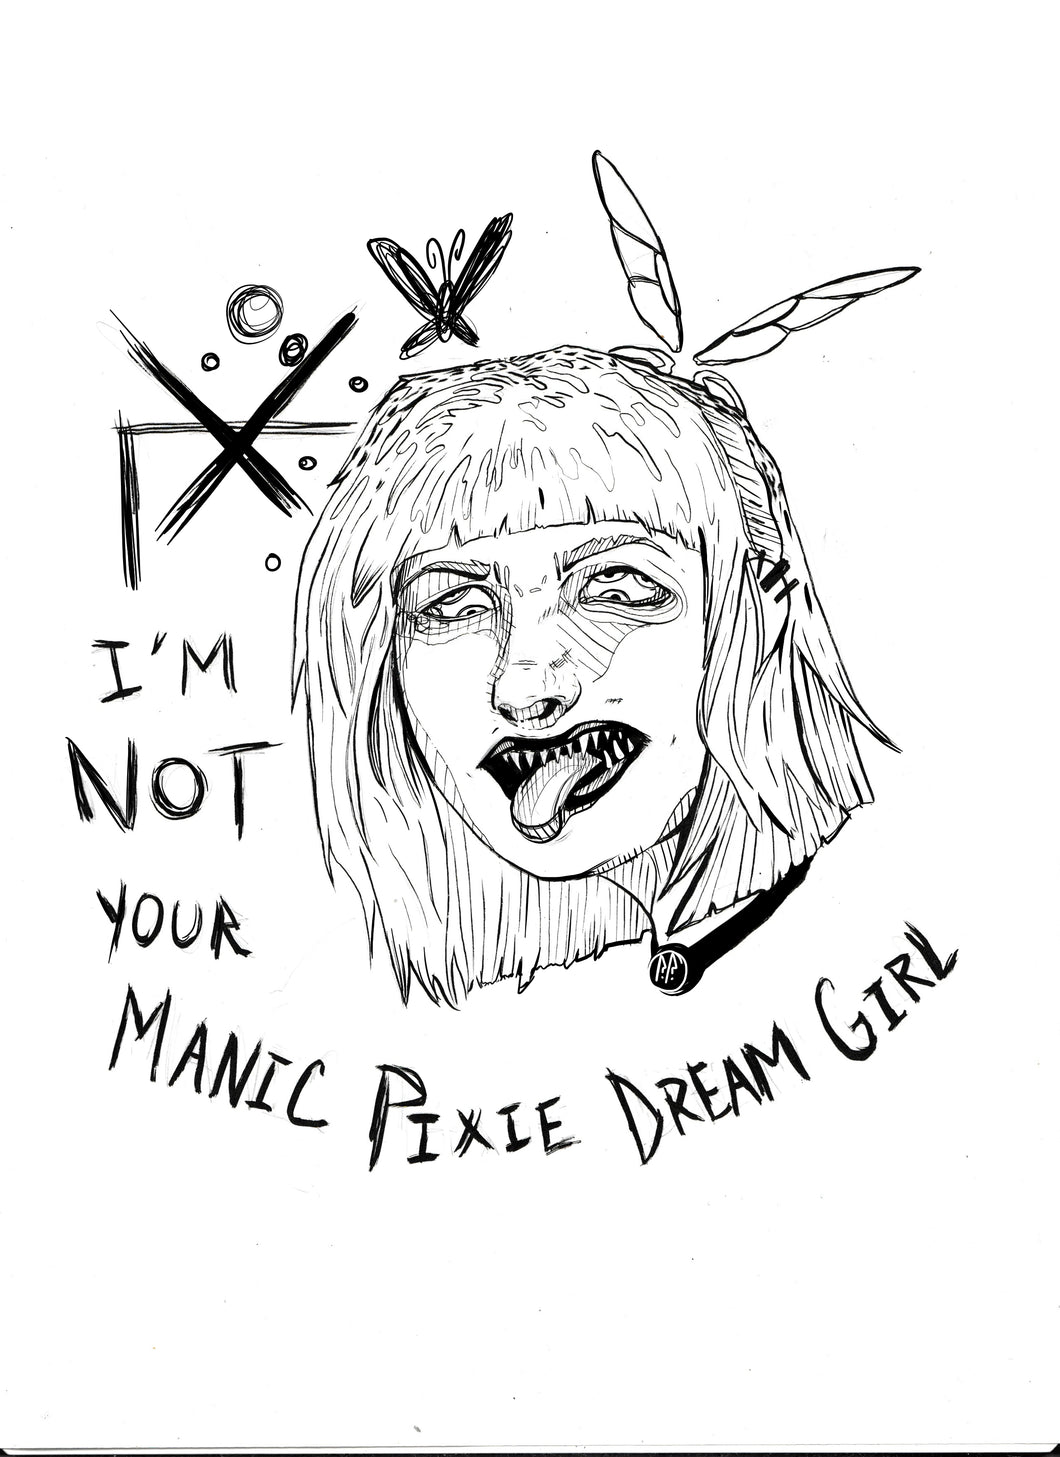 I'm not your manic pixie dream girl  - 8x10 feminist art - Print on paper